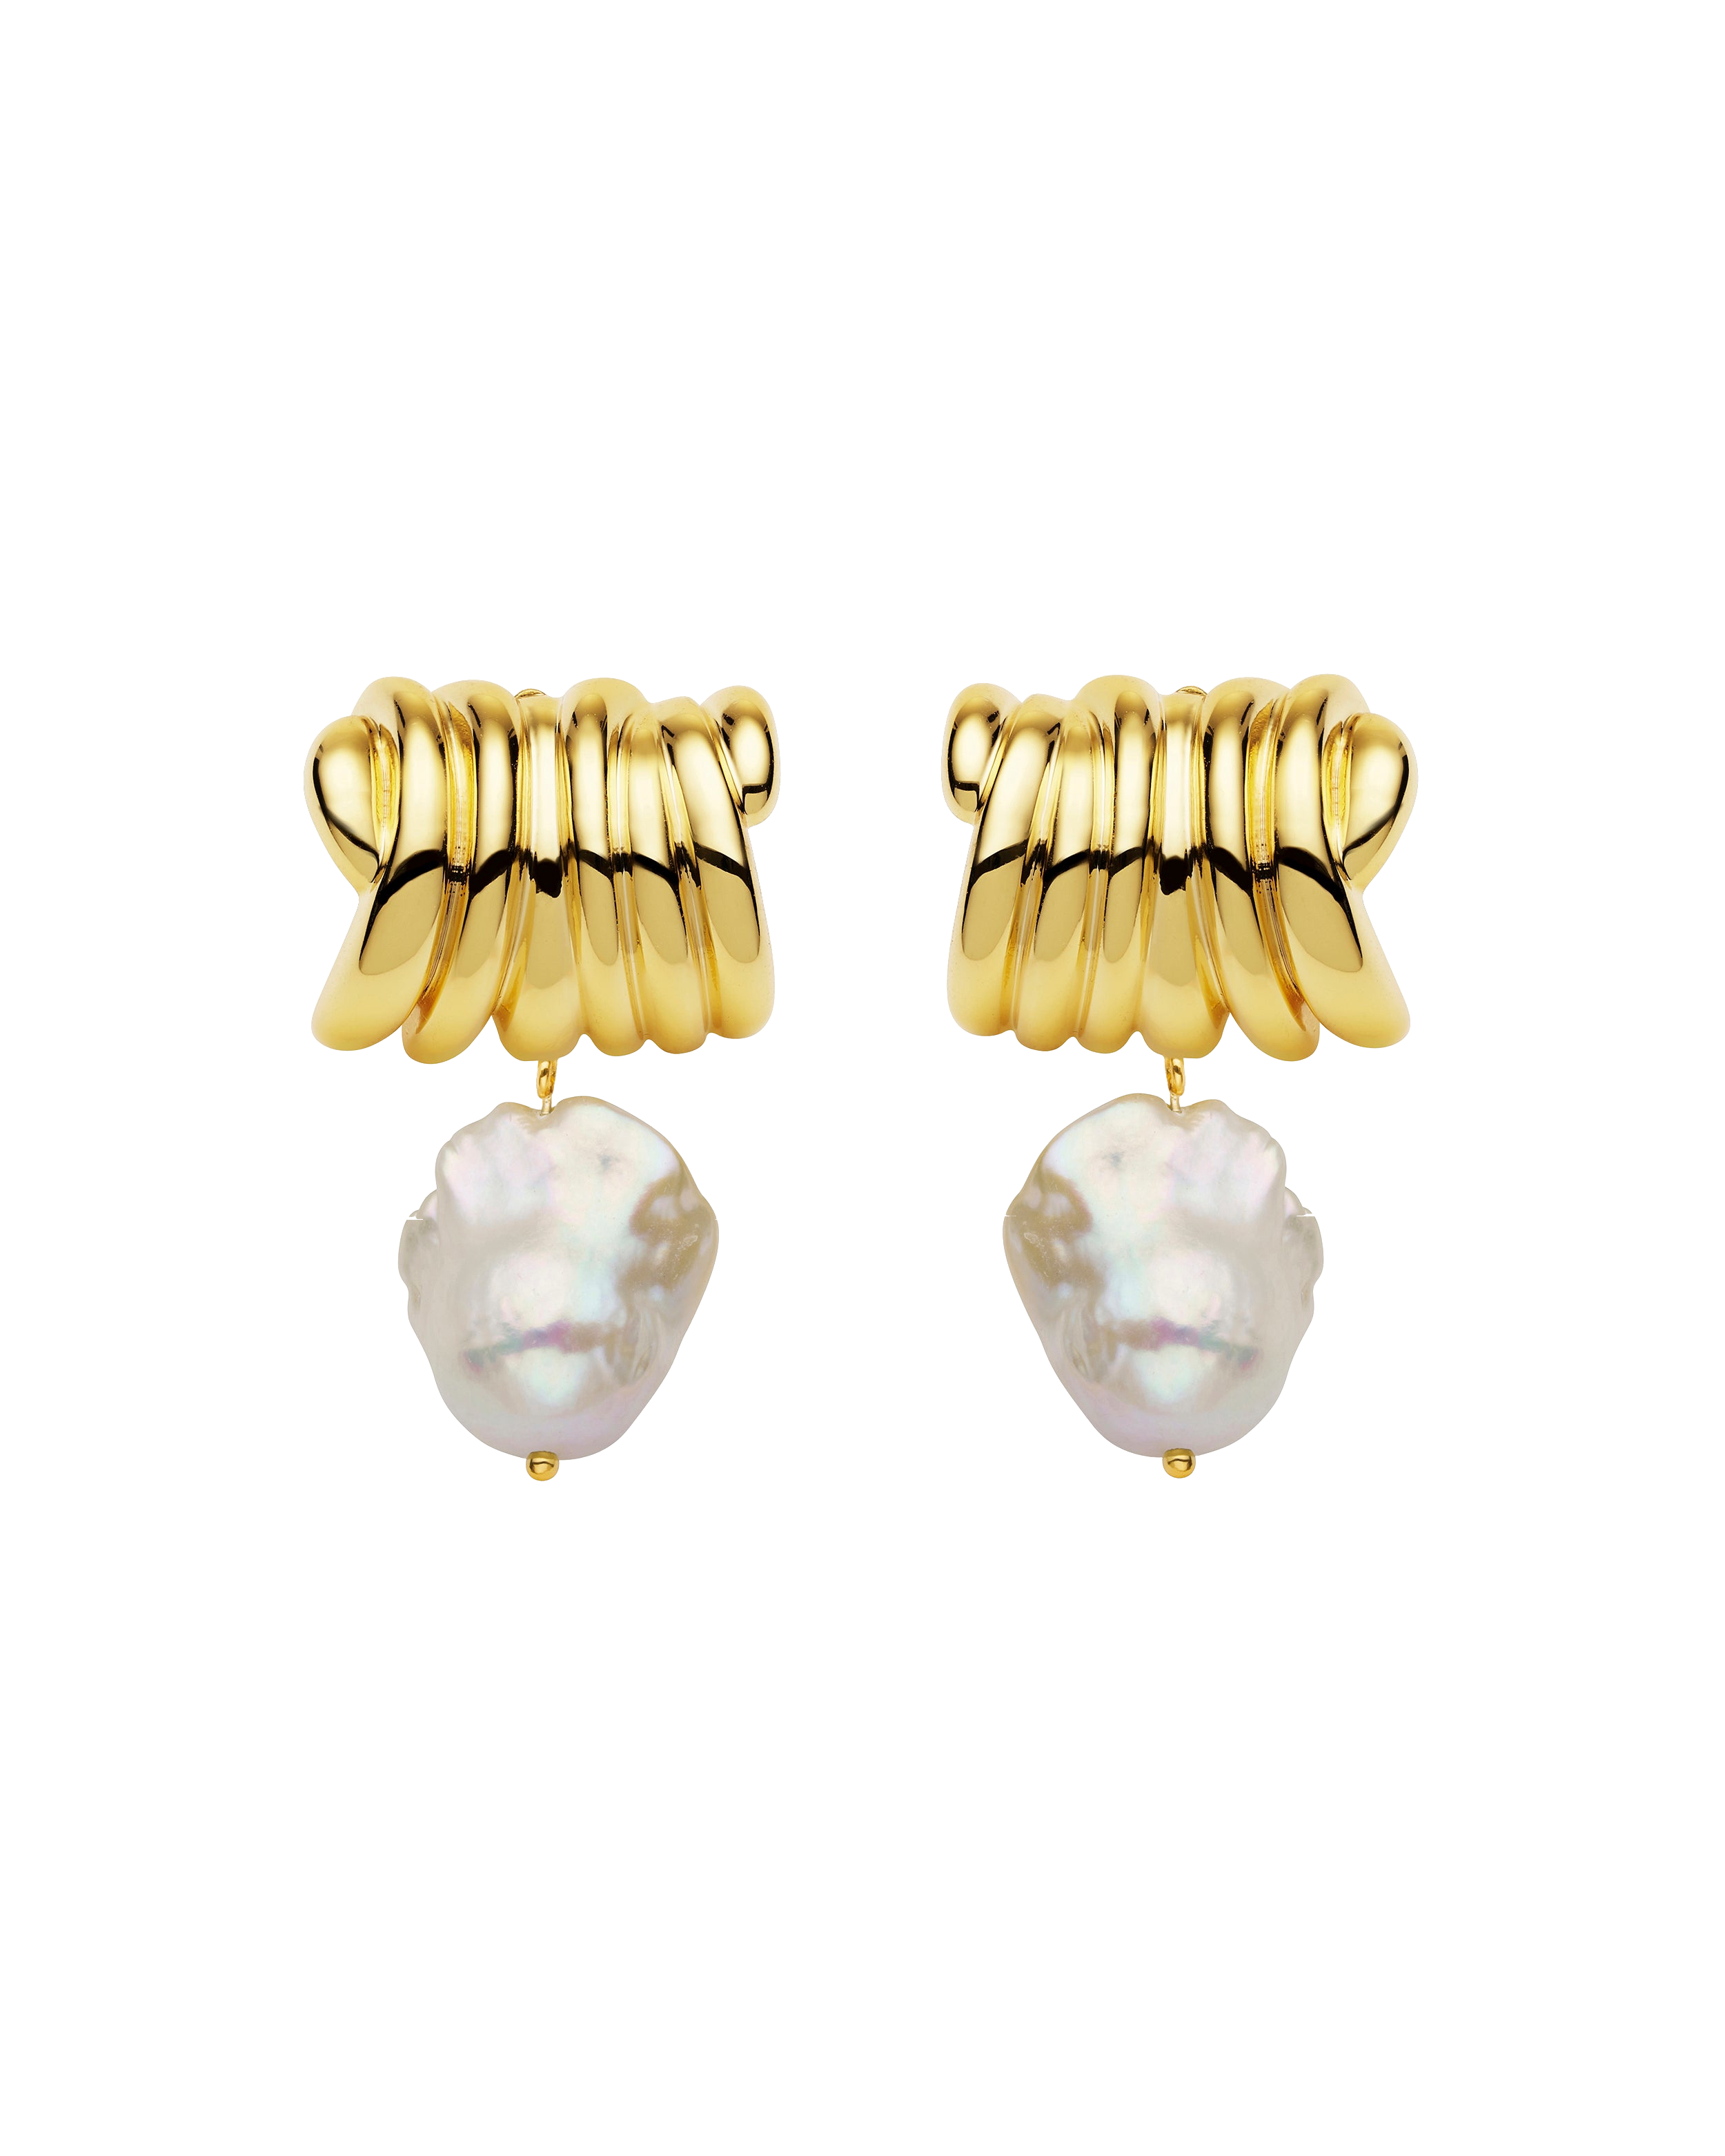 Amber Sceats Wrenlie Earrings In Gold